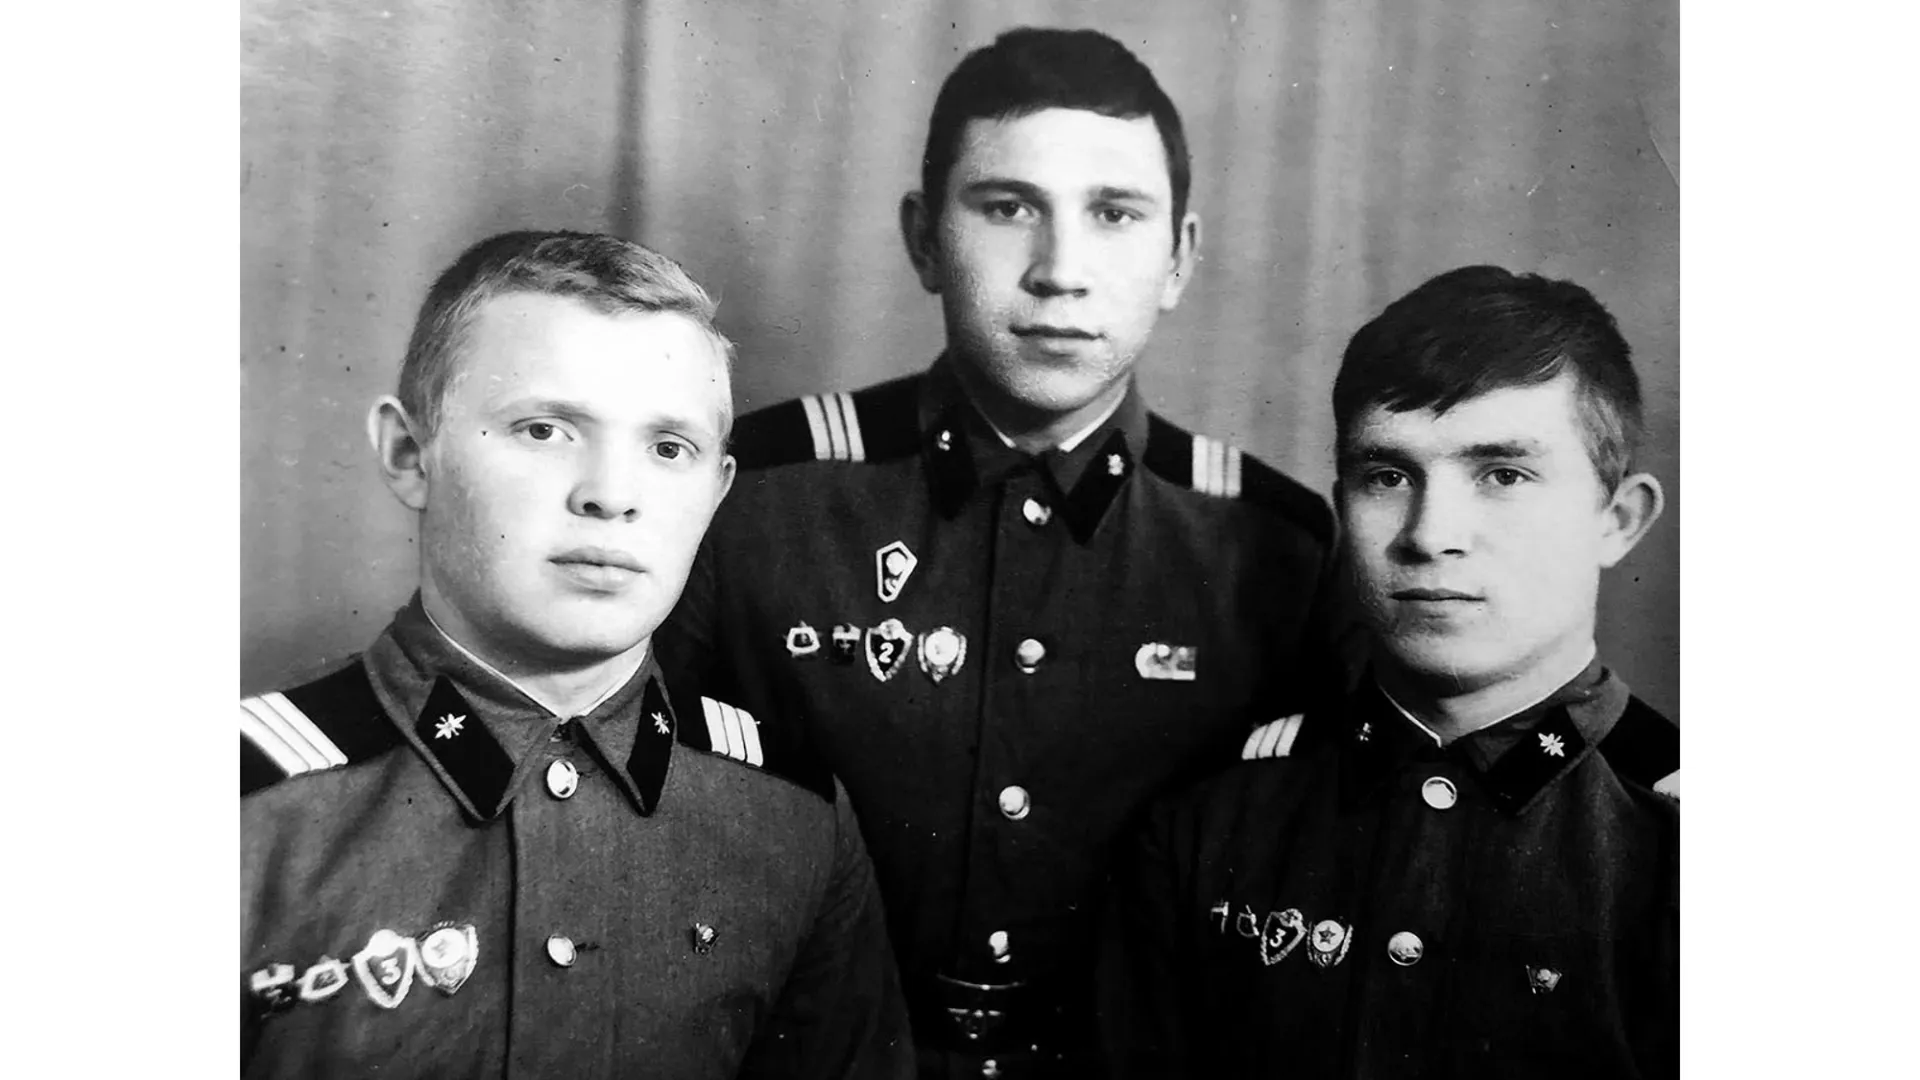 Владимир Дронзиков (слева) и Юрий Кукевич (справа) во время службы в армии. 1970-е годы. Фото из архива Юрия Кукевича